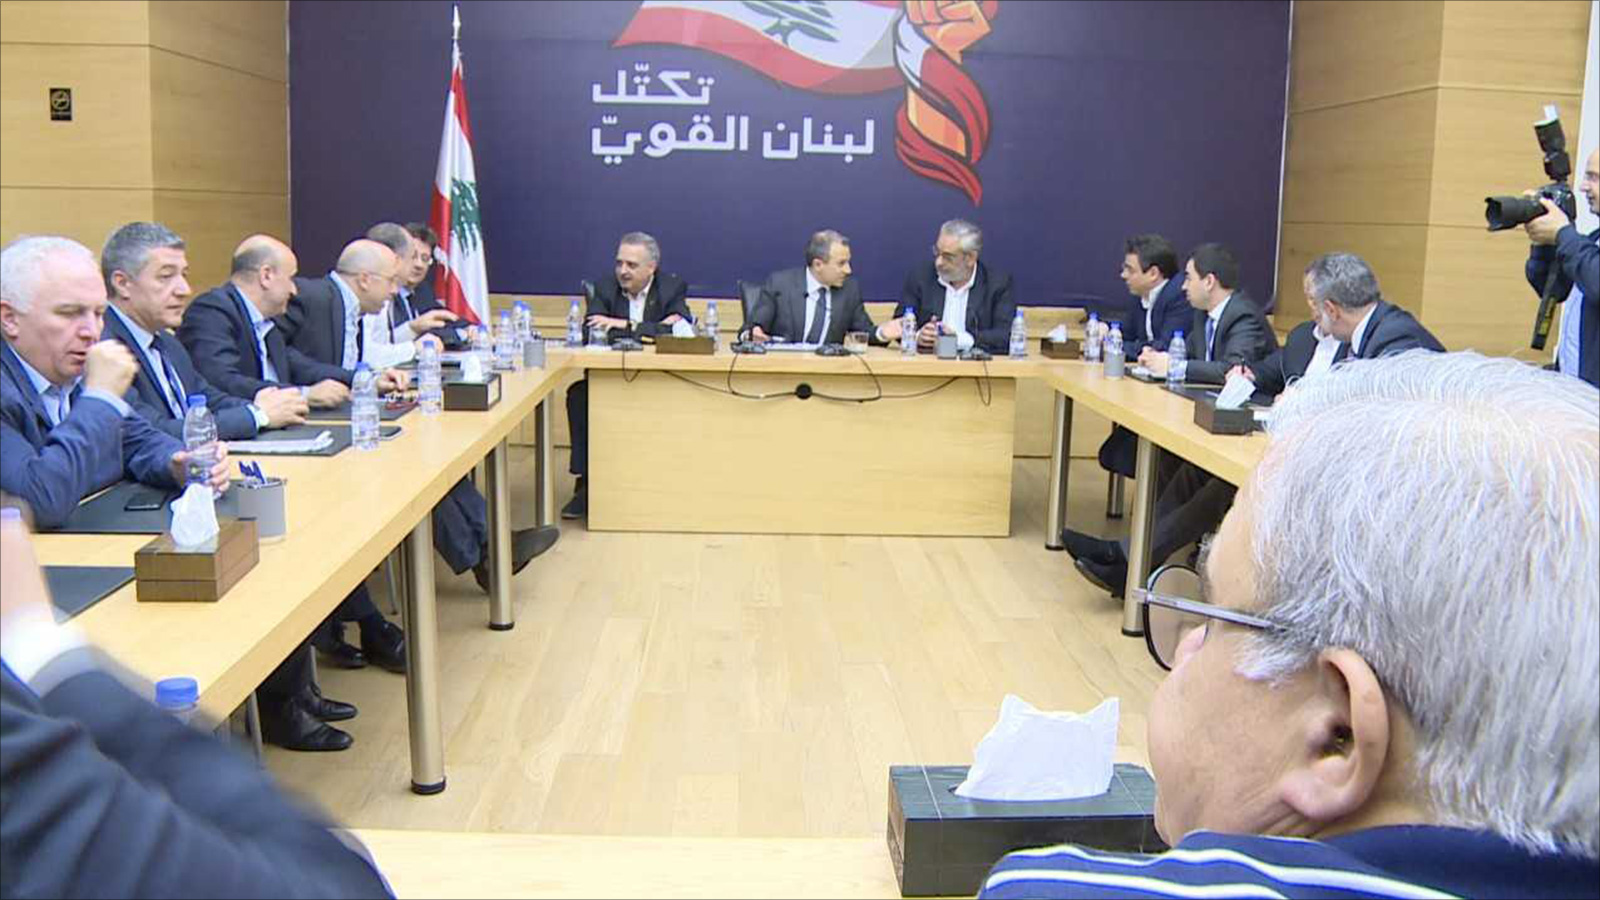 ‪التيار الوطني الحر يتهم القوات اللبنانية بمواجهة مشاريع وزراء التيار في الحكومة‬  (الجزيرة)